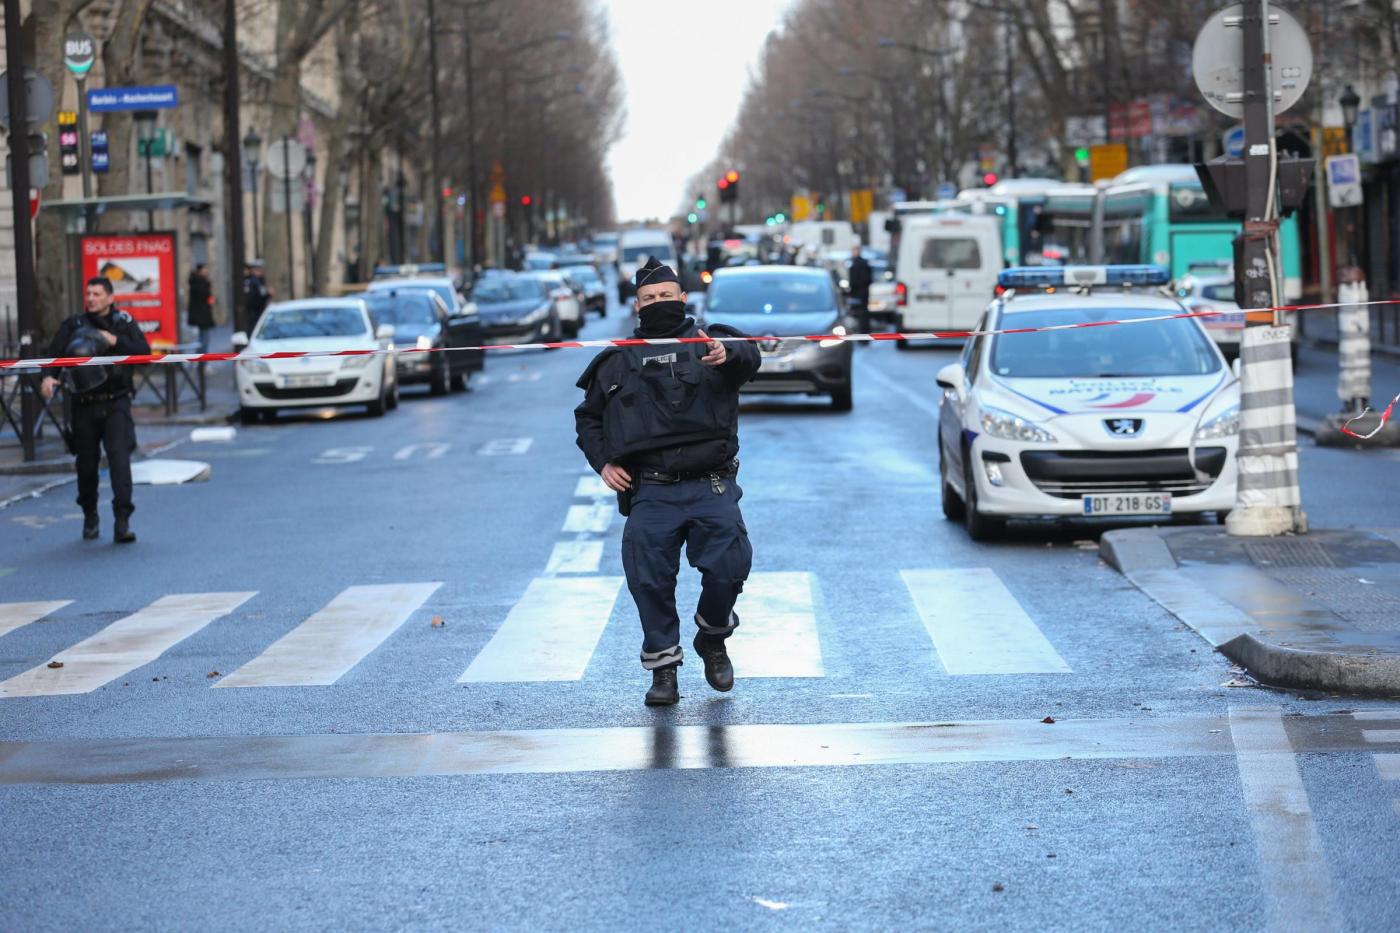 Anniversario Charlie Hebdo. Hollande: "La nostra lotta al terrorismo continuera' anche all'estero"